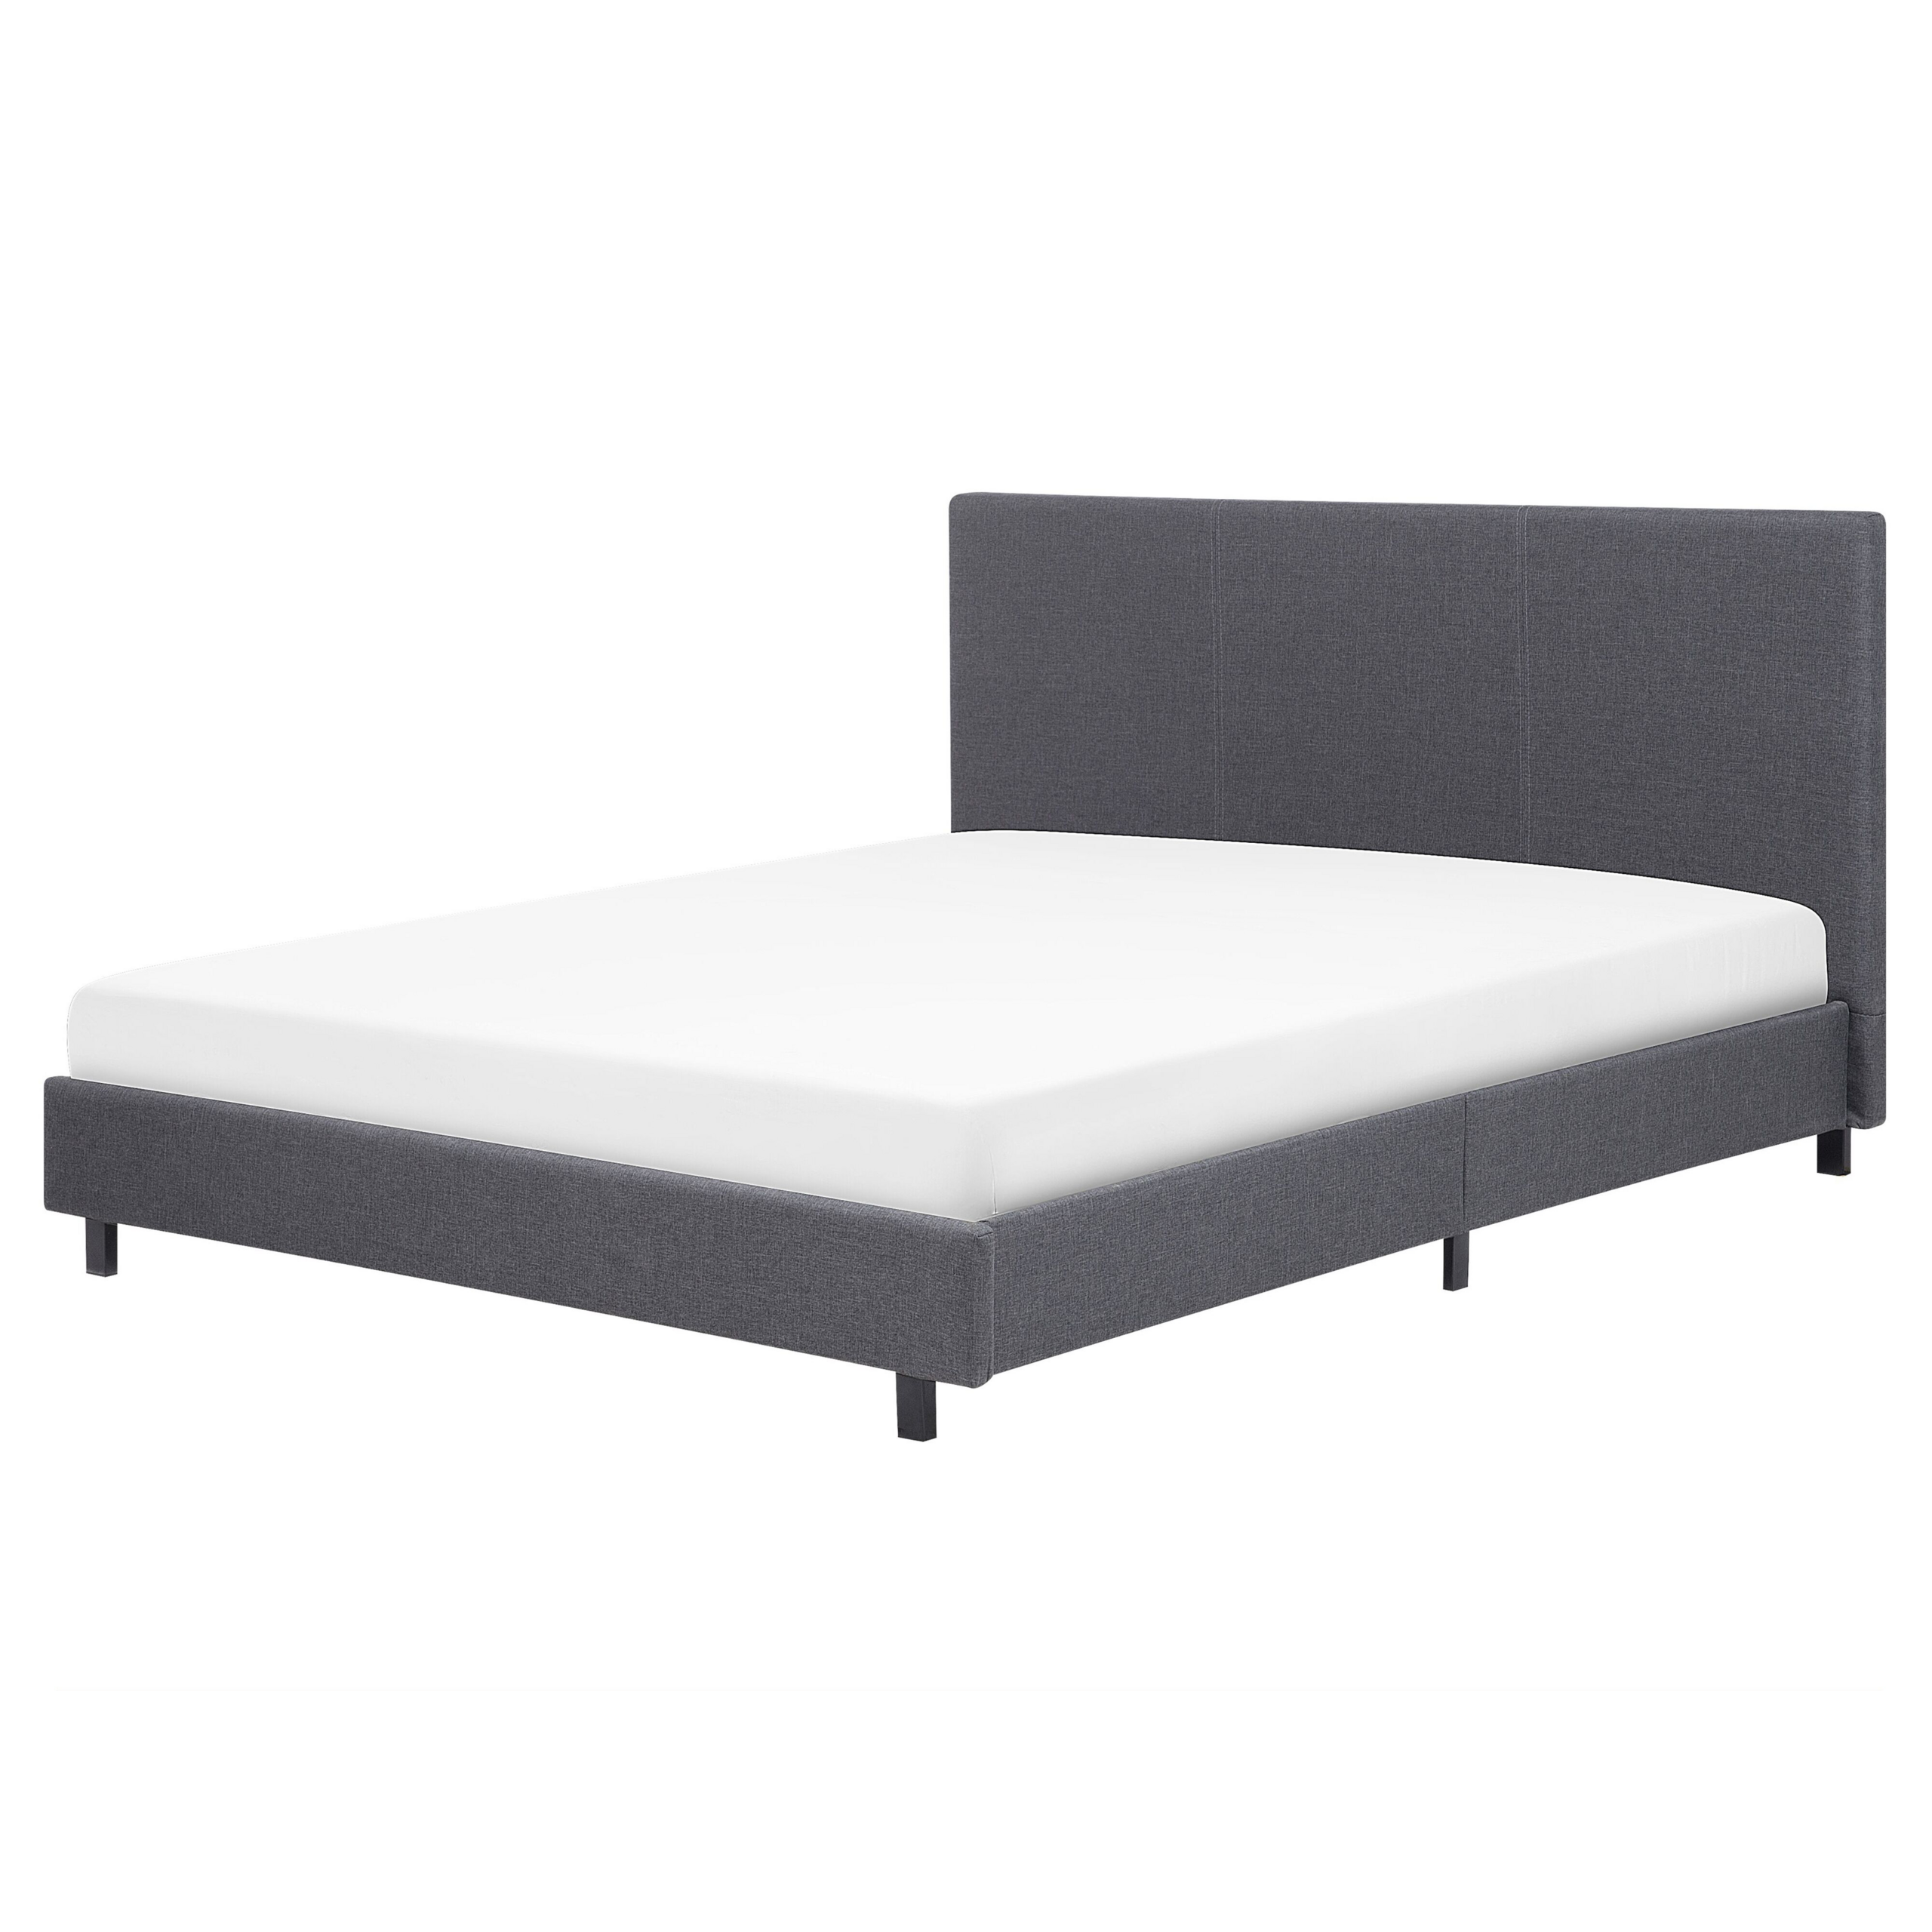 Beliani Slatted Bed Frame Grey Polyester Fabric Upholstered 5ft3 EU King Size Modern Design